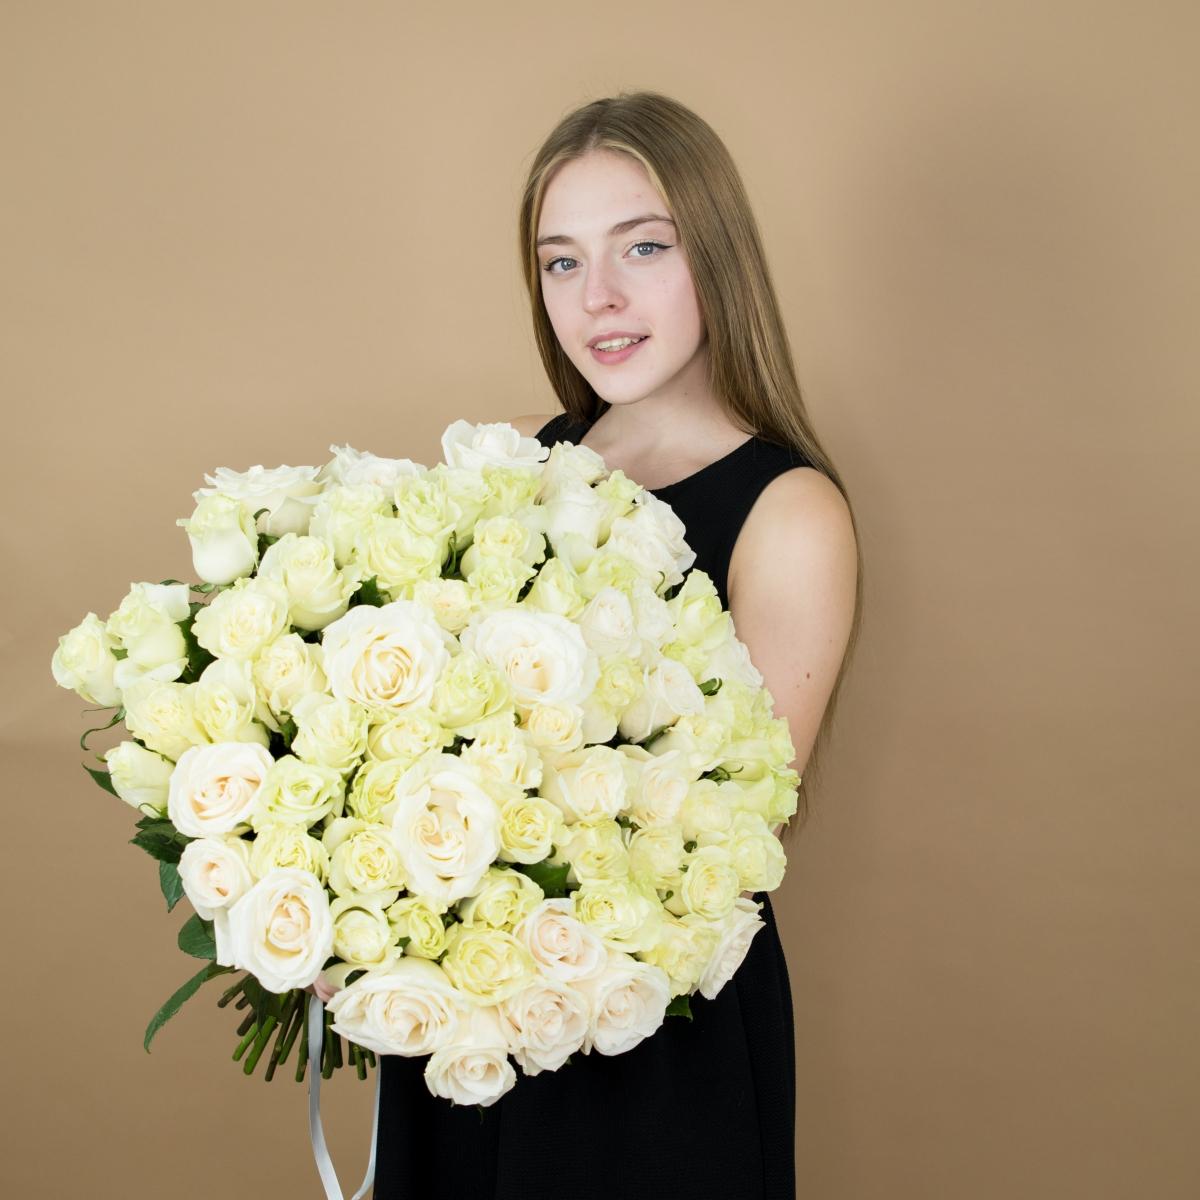 Букет из белых роз 101 шт 40 см (Эквадор) [артикул  86580]